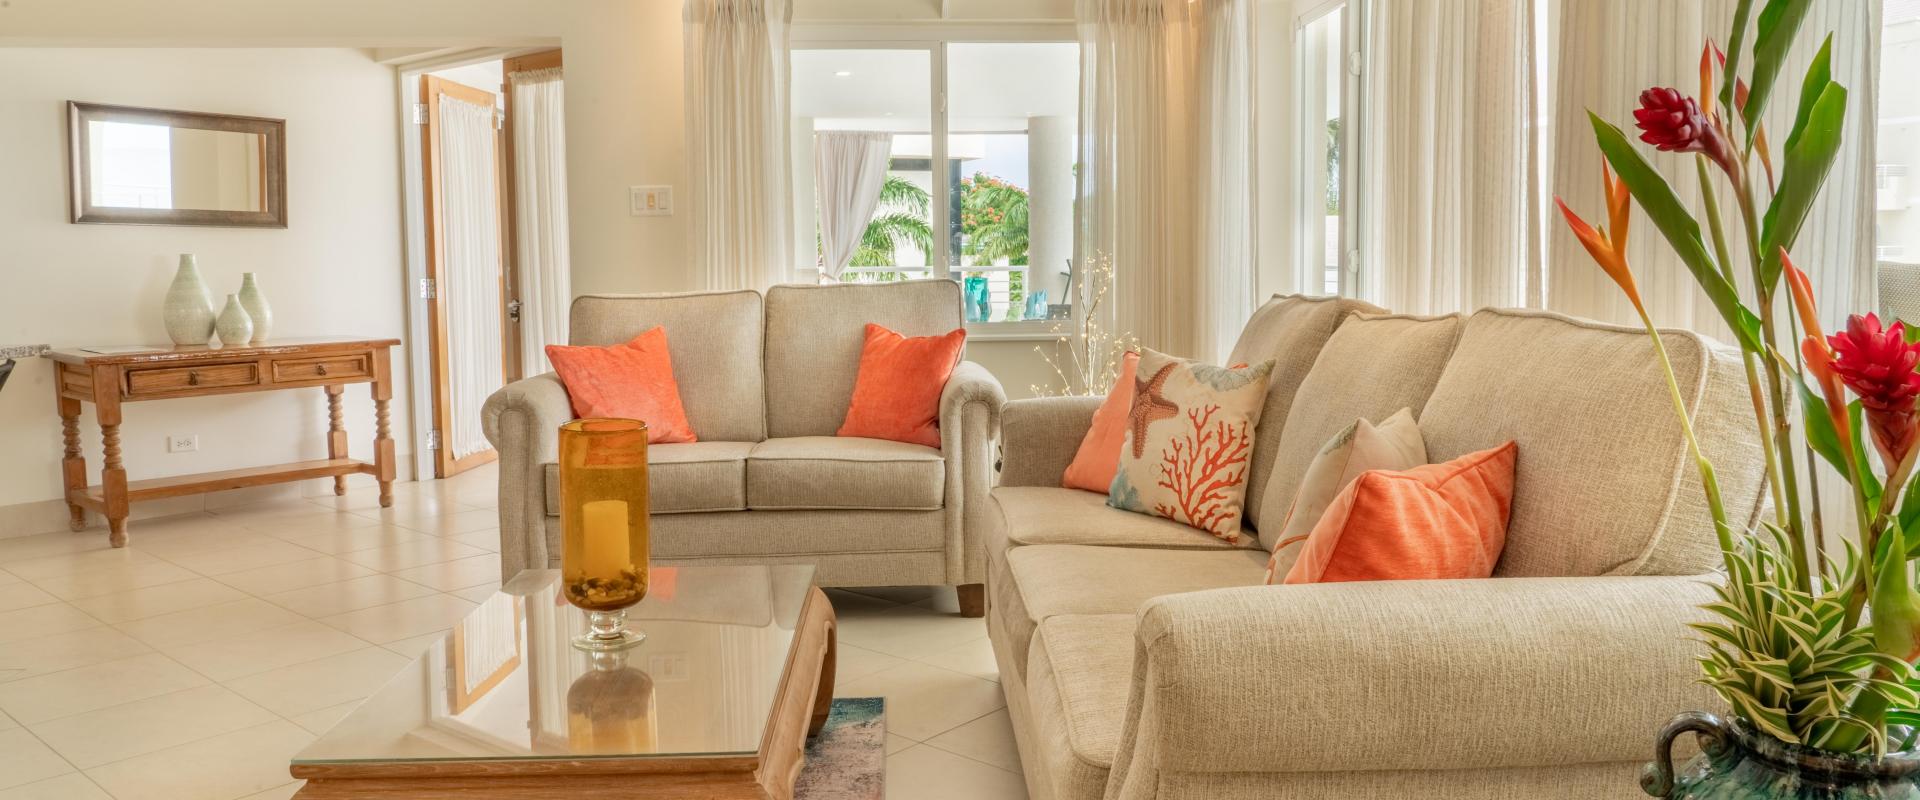 Beachfront Holiday Rental Barbados Palm Beach 410 Living Room Sofa